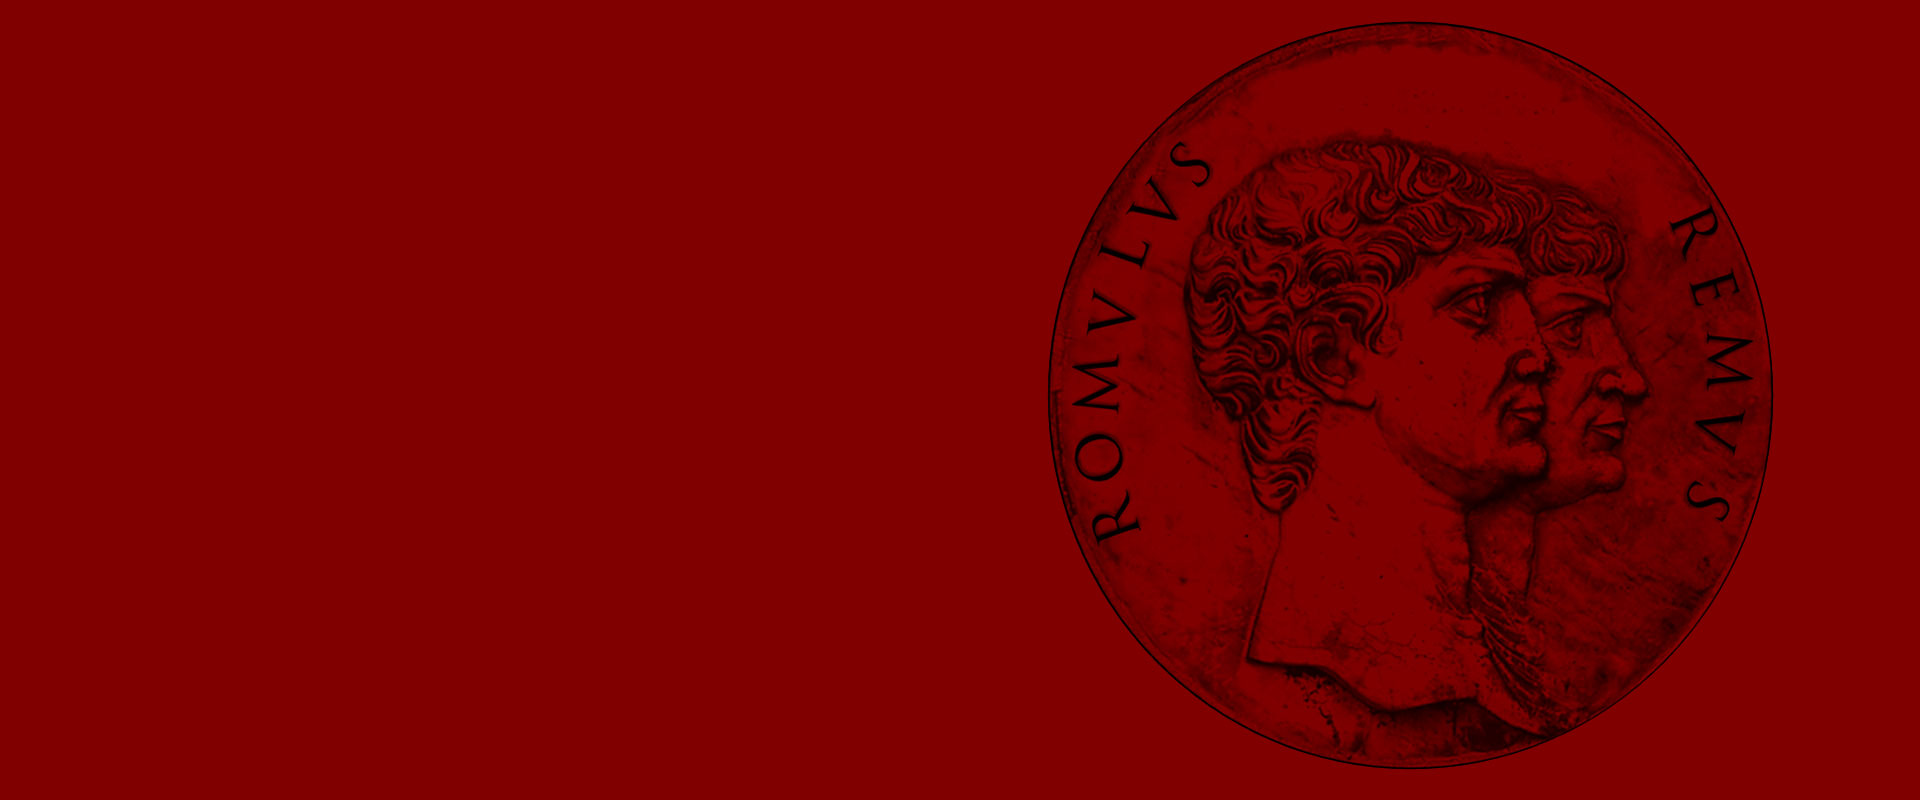 Romulus Remus medallion